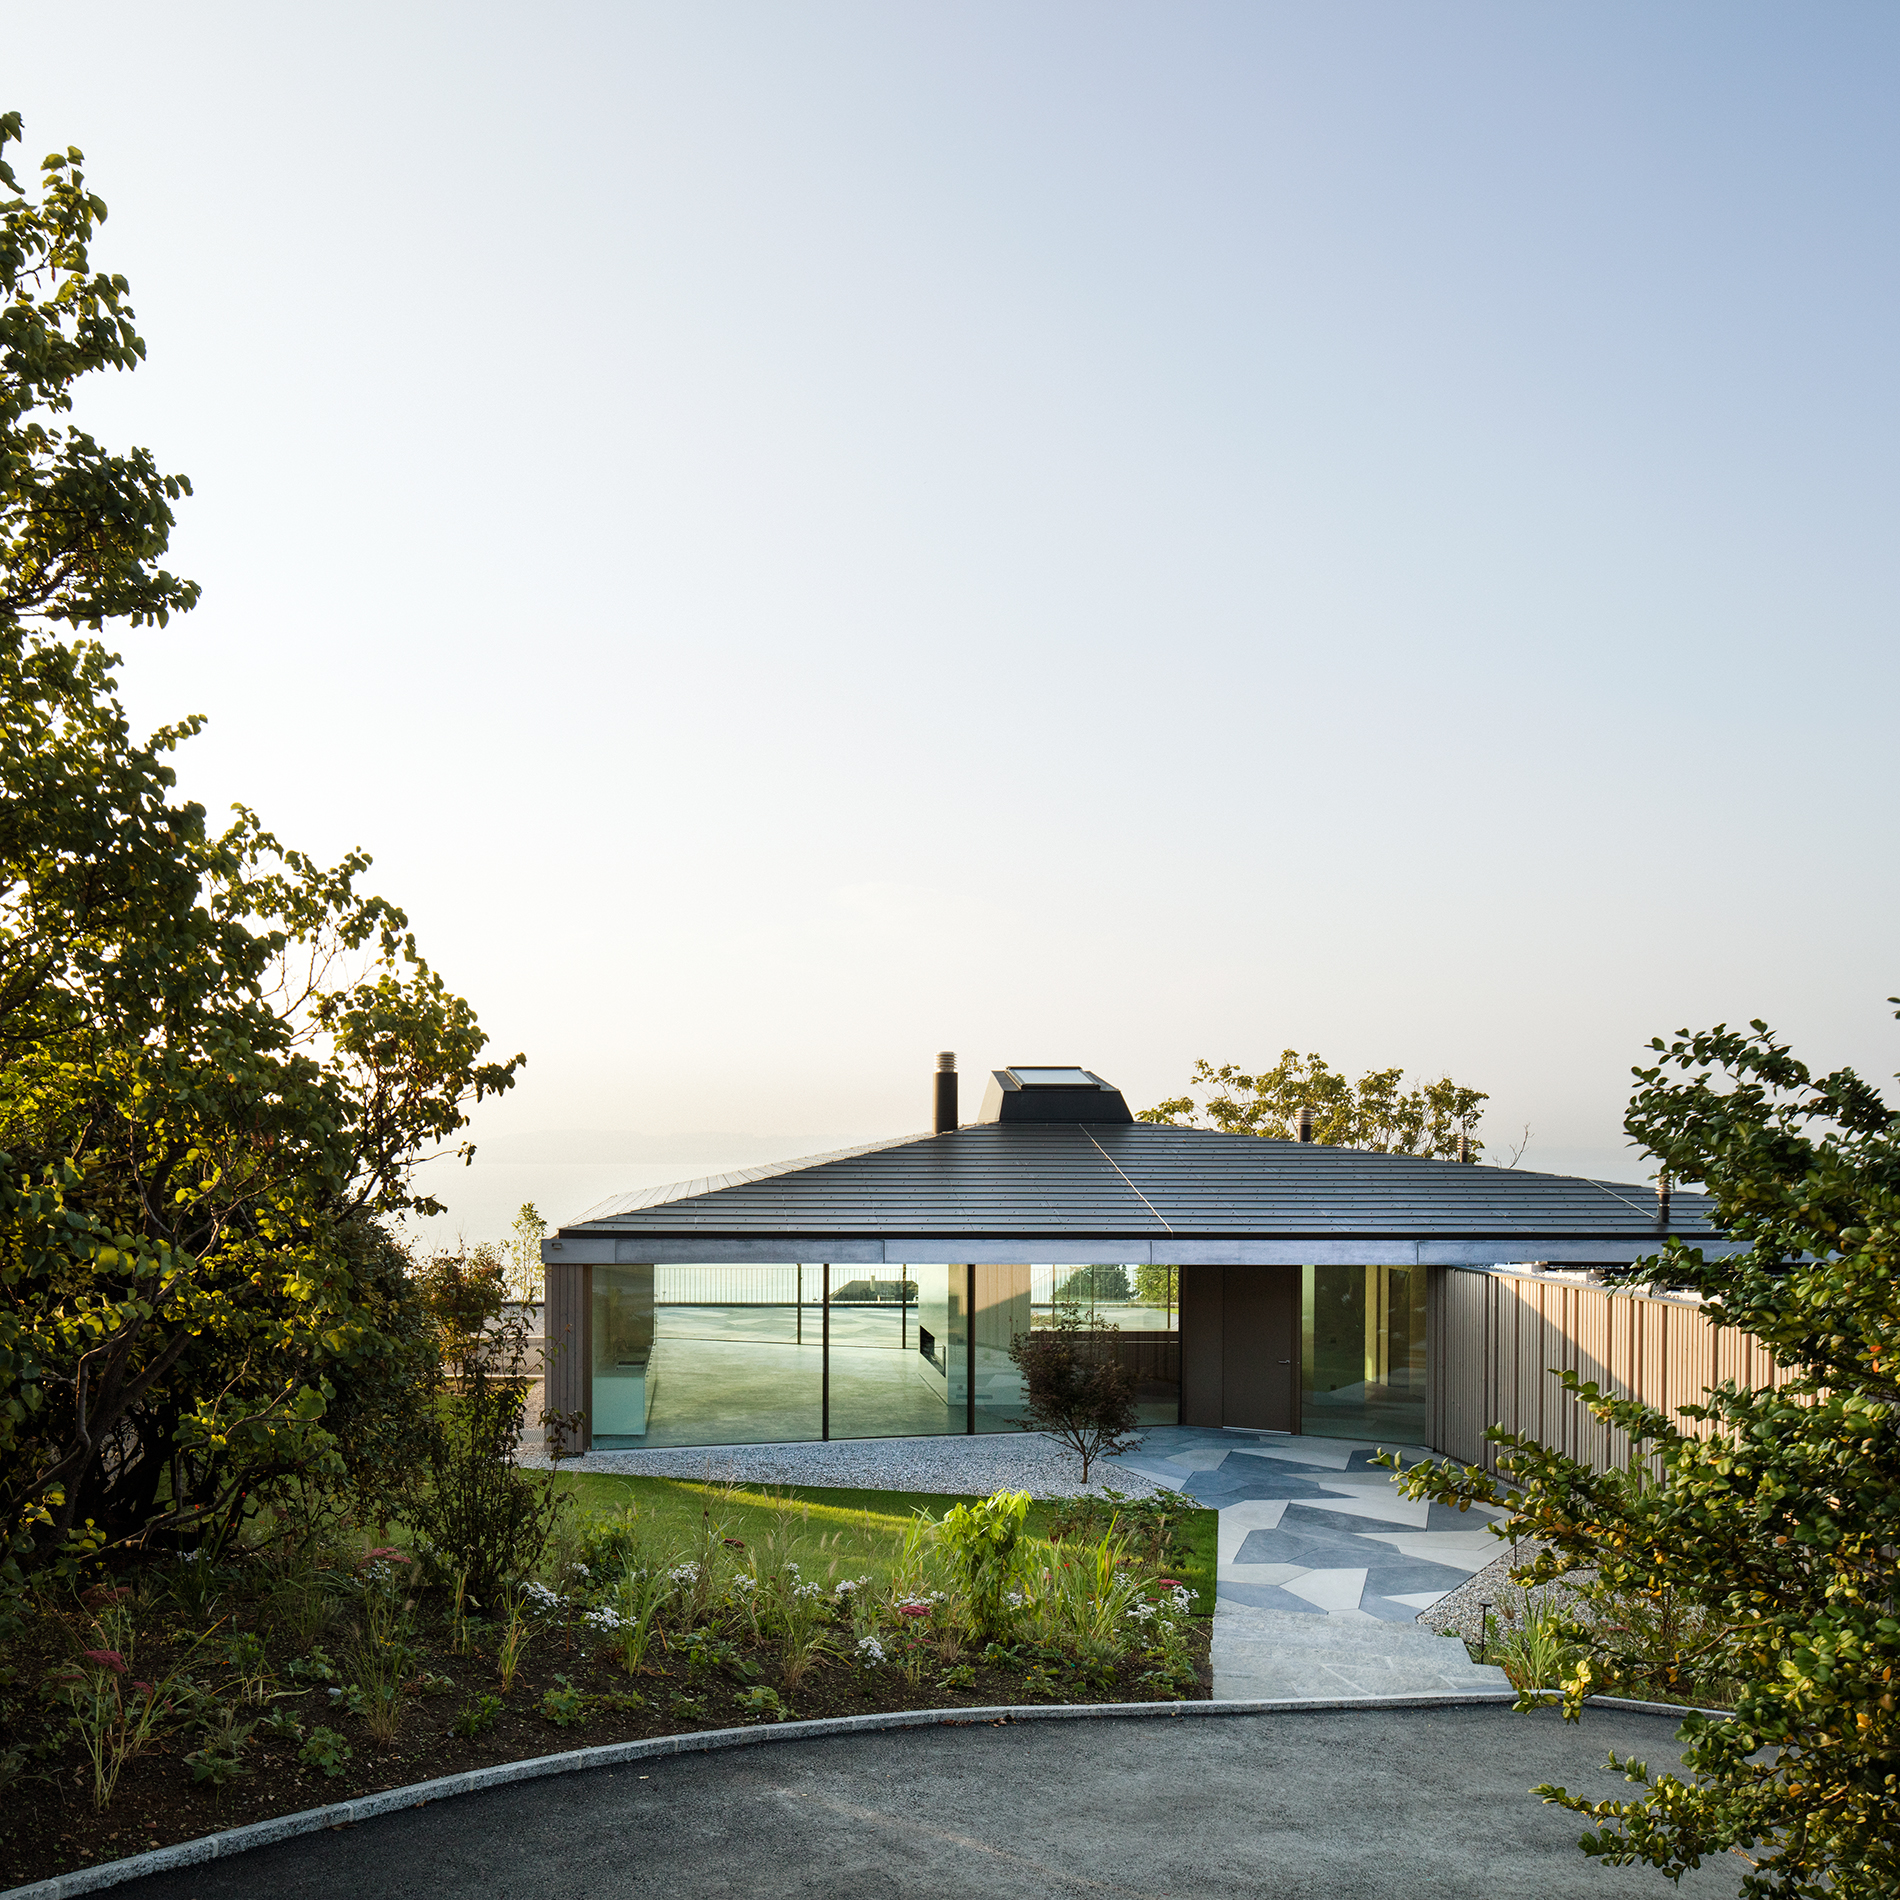 : Maison avec vue panoramique, Hauterive, bauzeit architekten